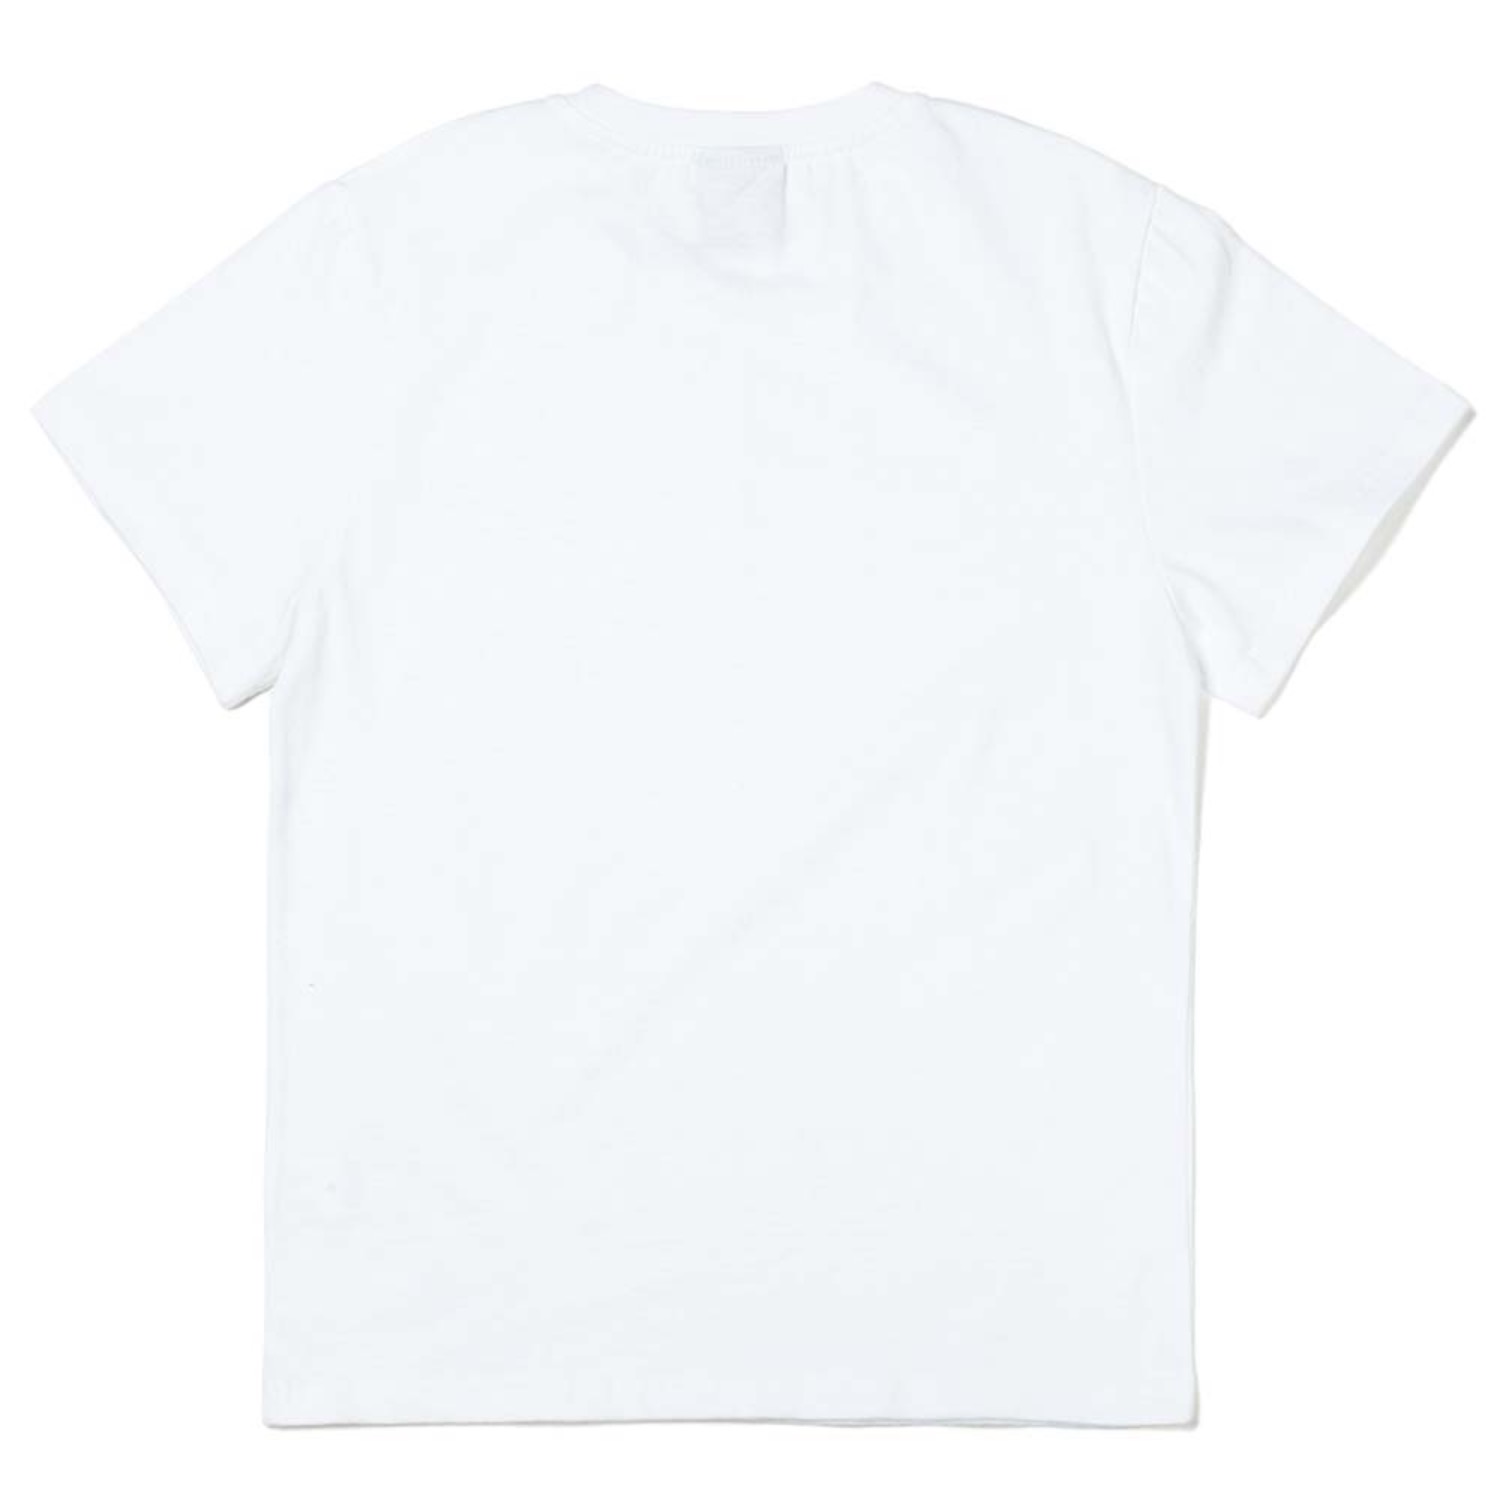 놀고먹고자고 반팔티 화이트 Play, Eat and Sleep short sleeve T-shirts (White)